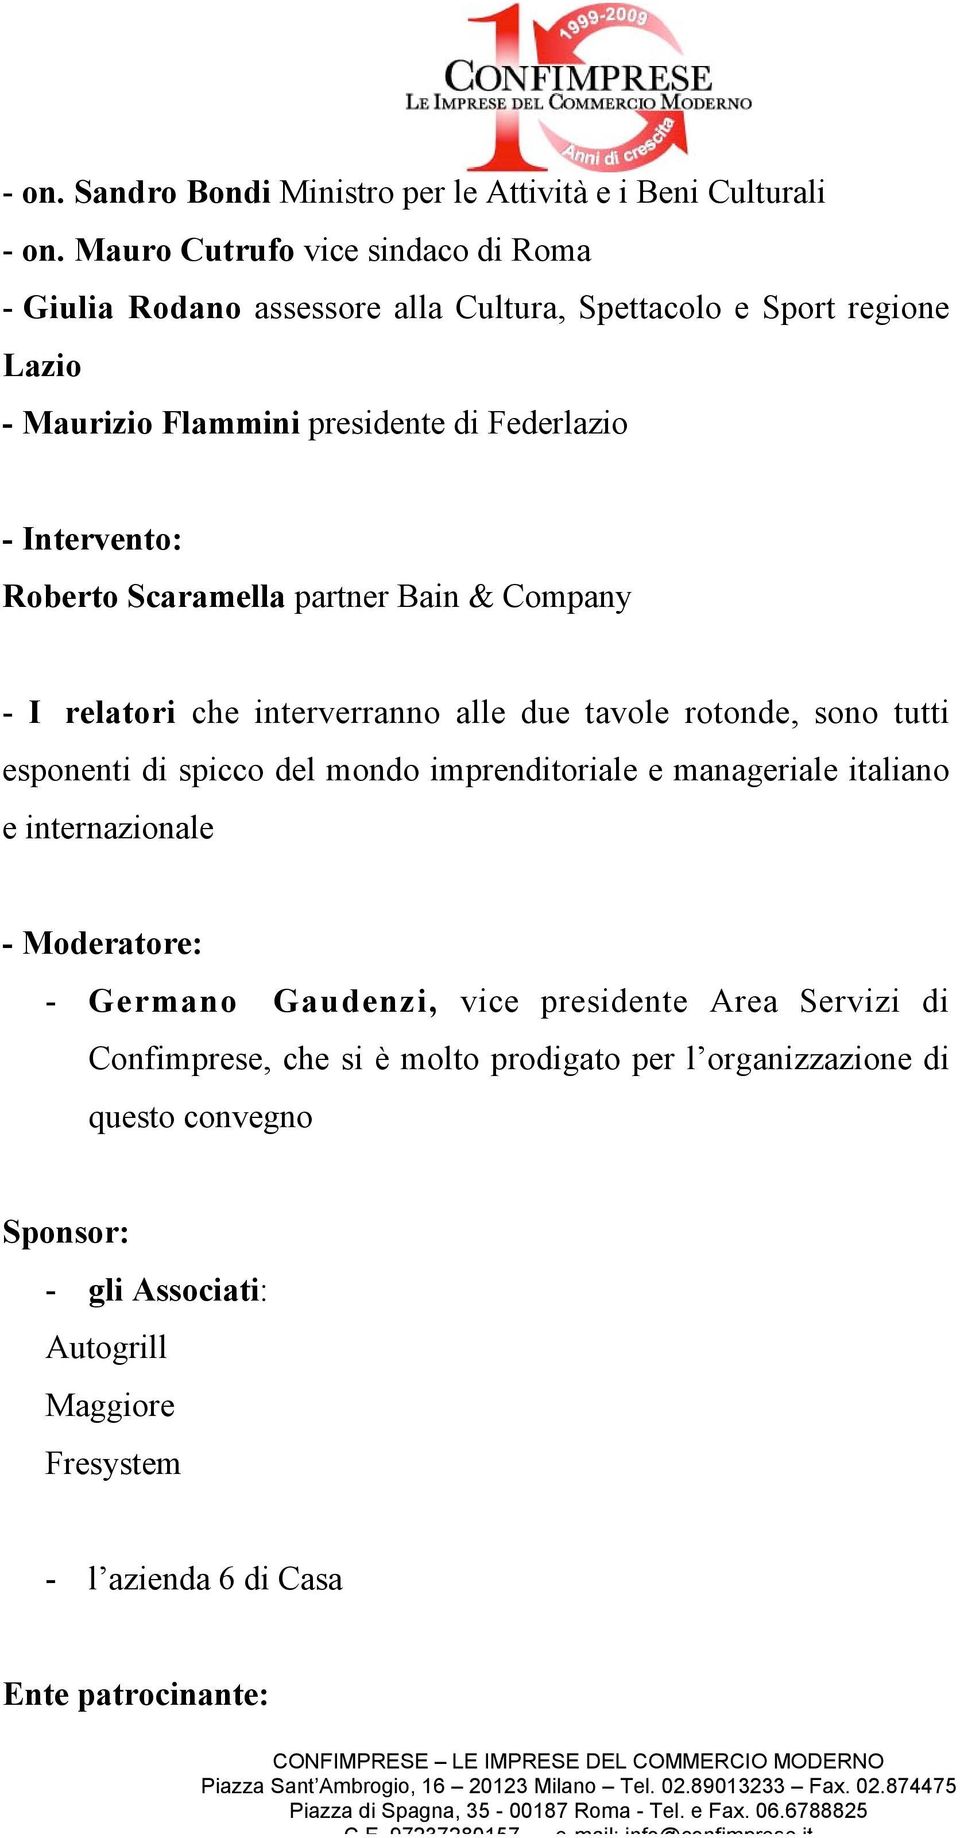 Roberto Scaramella partner Bain & Company - I relatori che interverranno alle due tavole rotonde, sono tutti esponenti di spicco del mondo imprenditoriale e